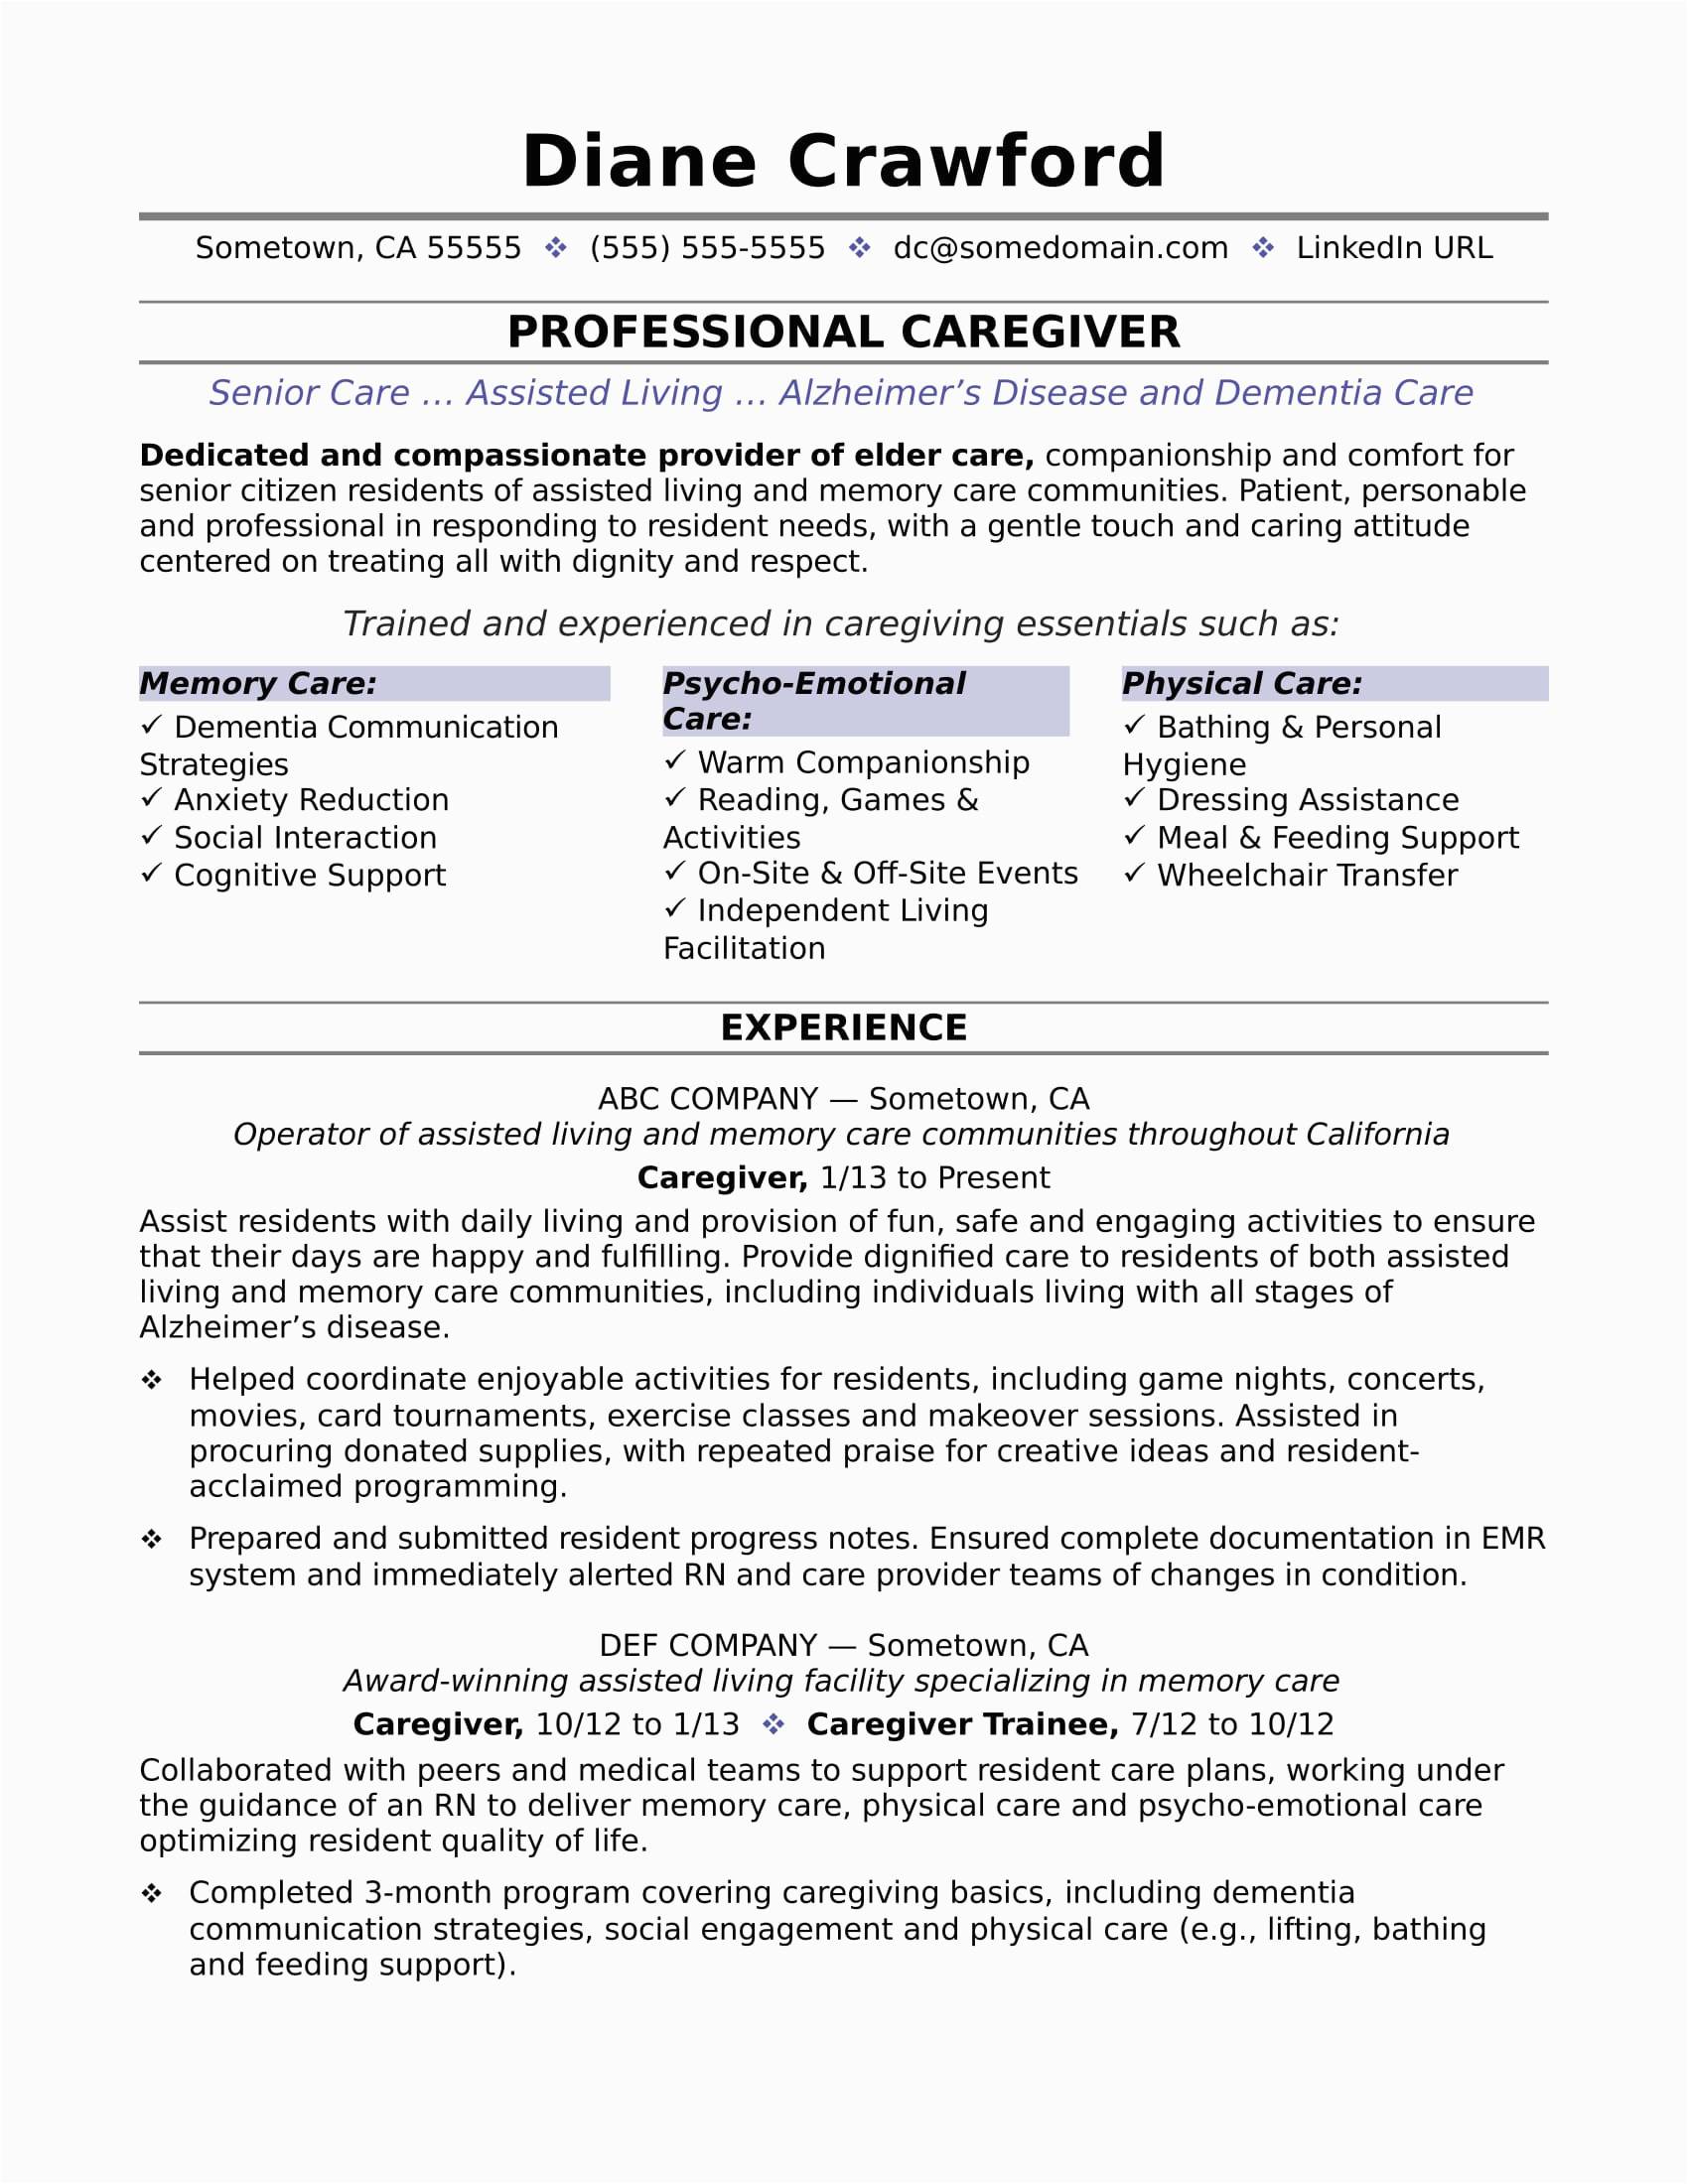 Private Caregiver for Elderly Resume Samples Caregiver Resume